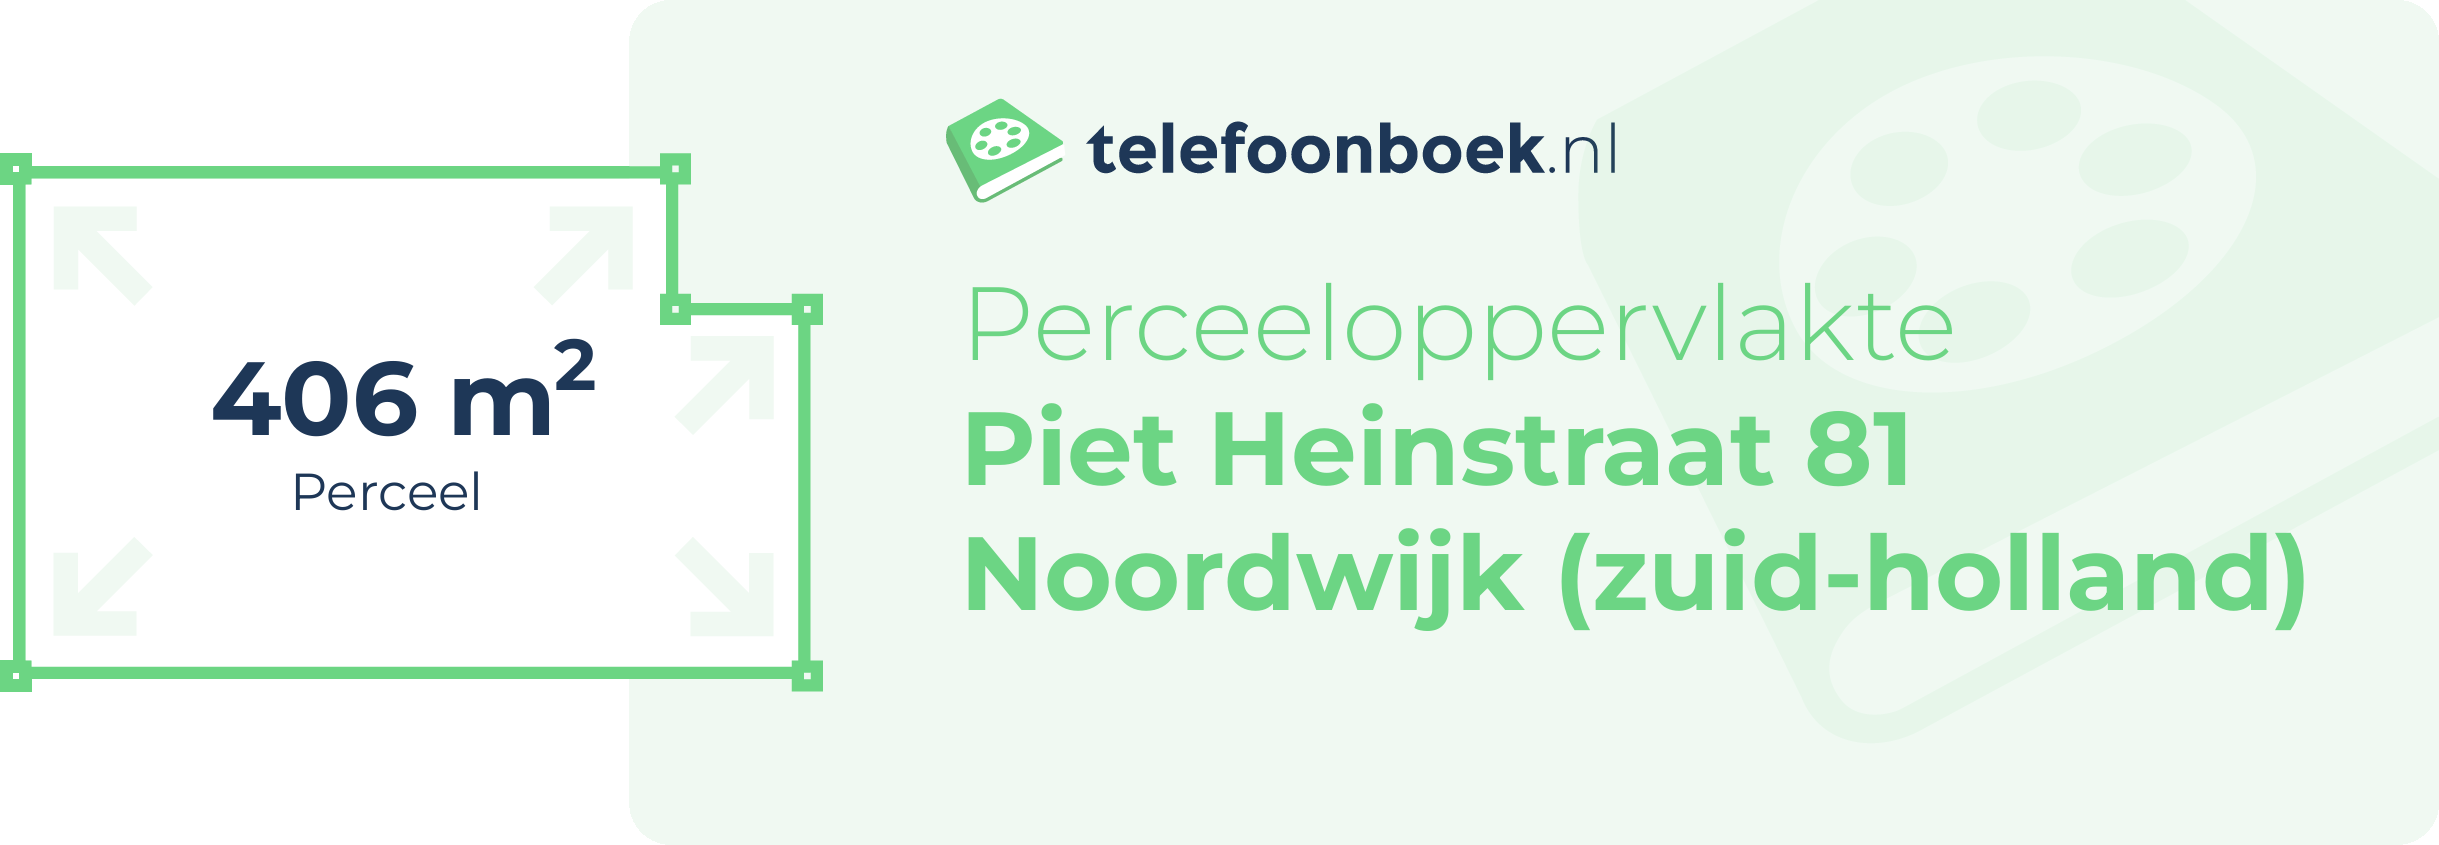 Perceeloppervlakte Piet Heinstraat 81 Noordwijk (Zuid-Holland)